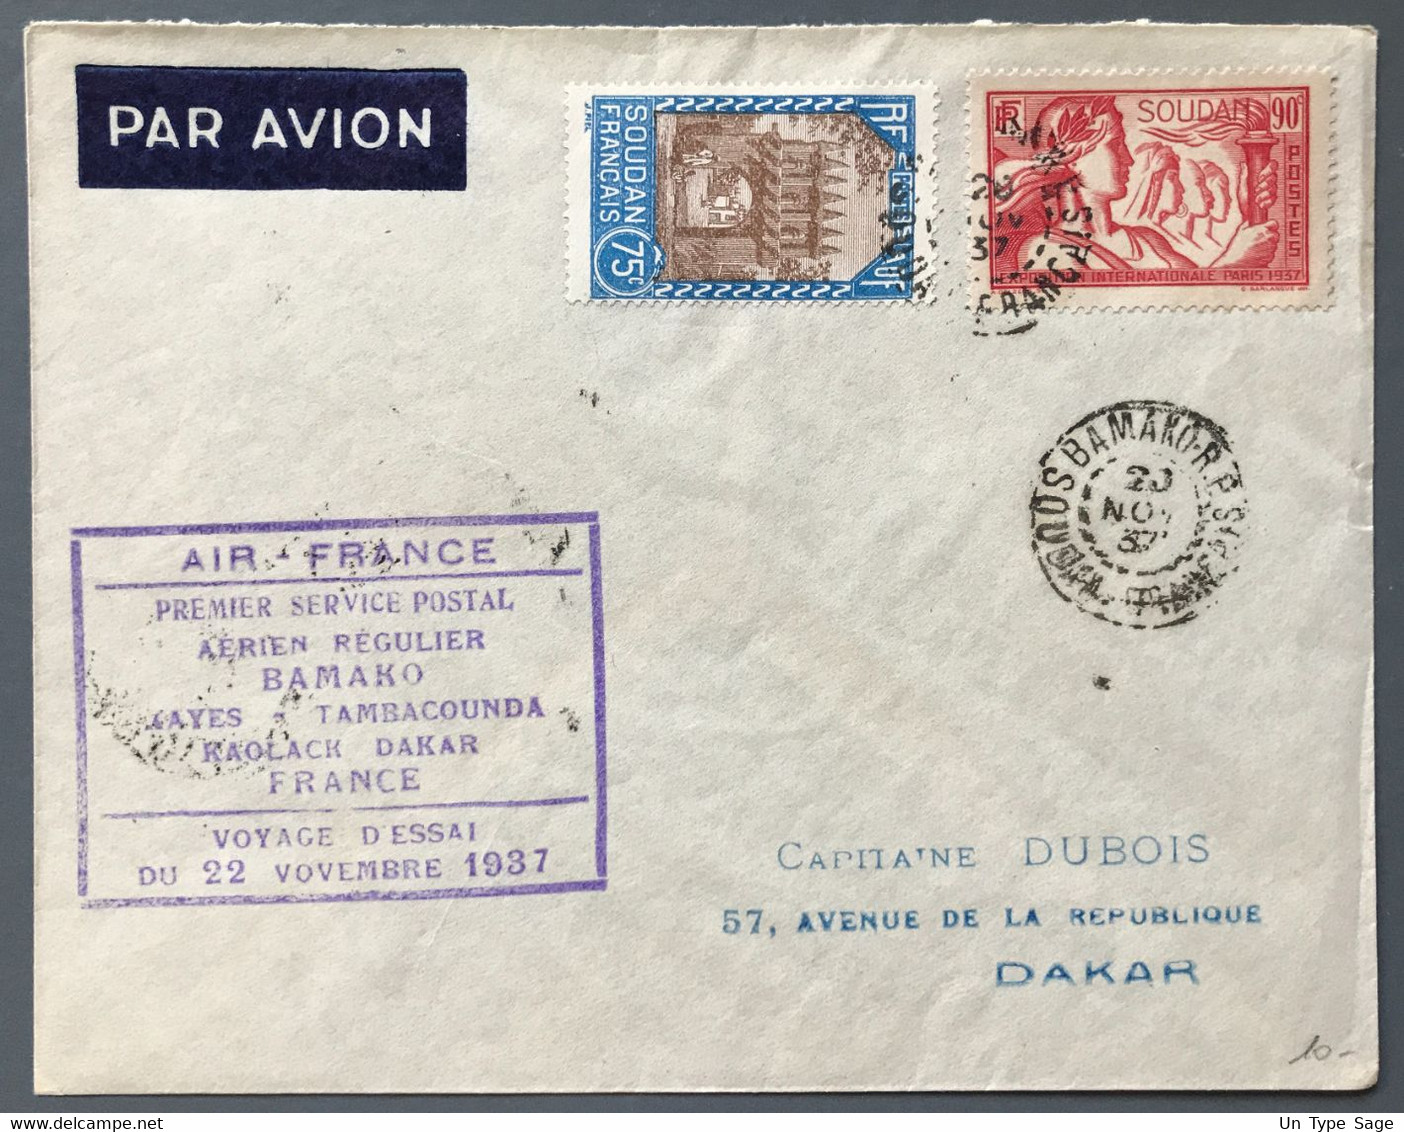 Soudan - Premier Service Postal Regulier Bamako-France - VOYAGE D'ESSAI 22.11.1937 - (A1360) - Covers & Documents